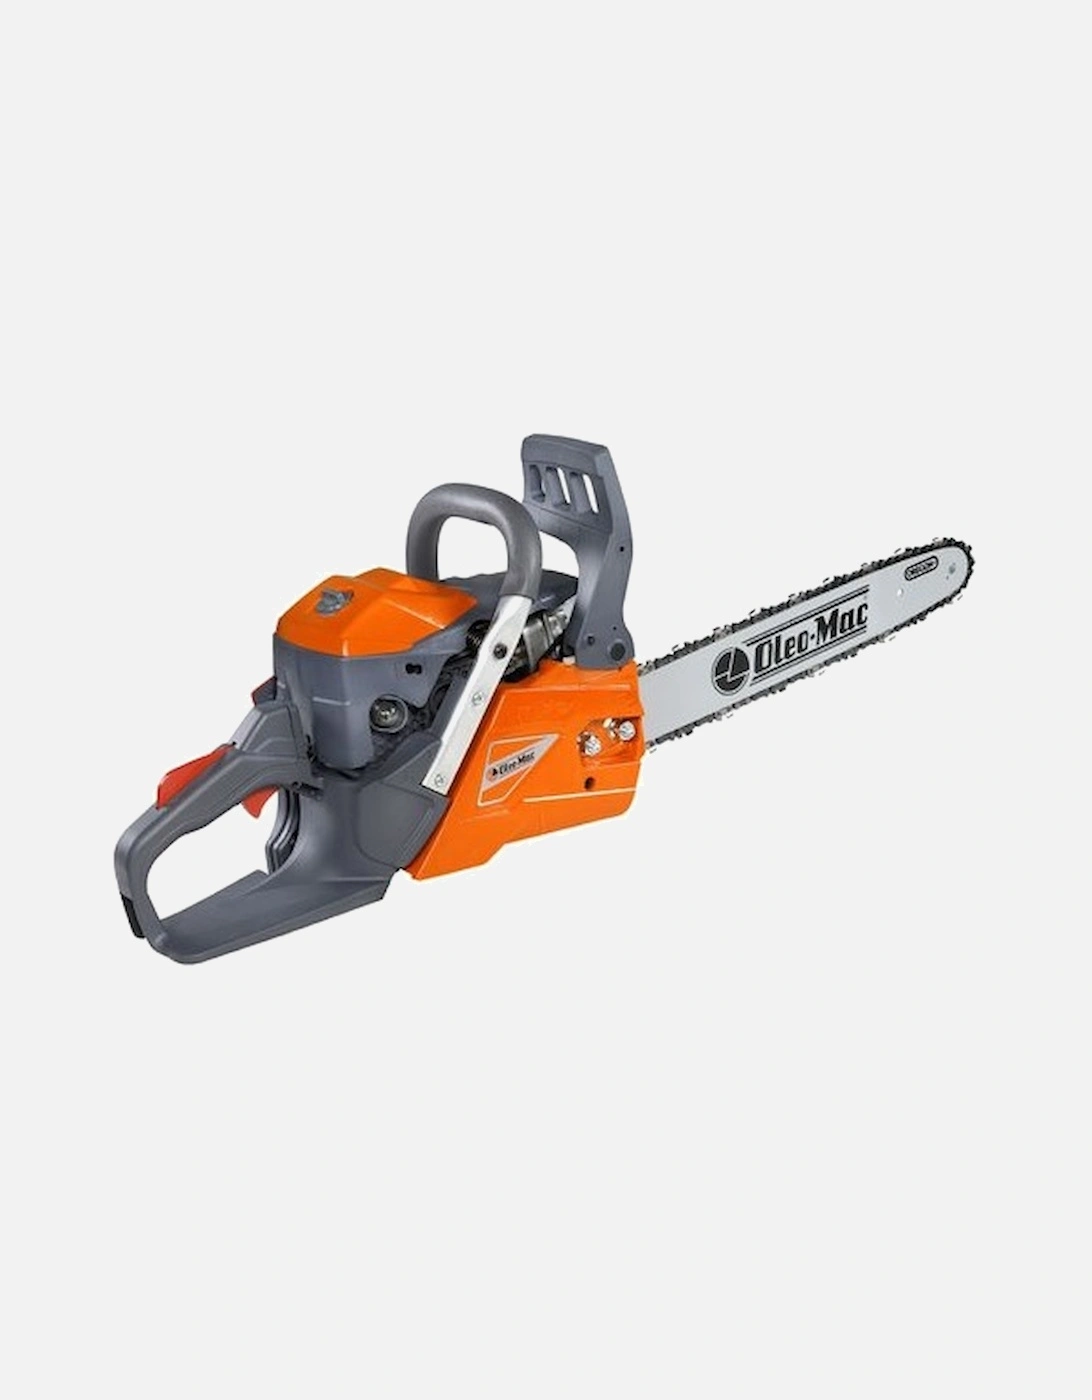 GSH400-16 Chainsaw